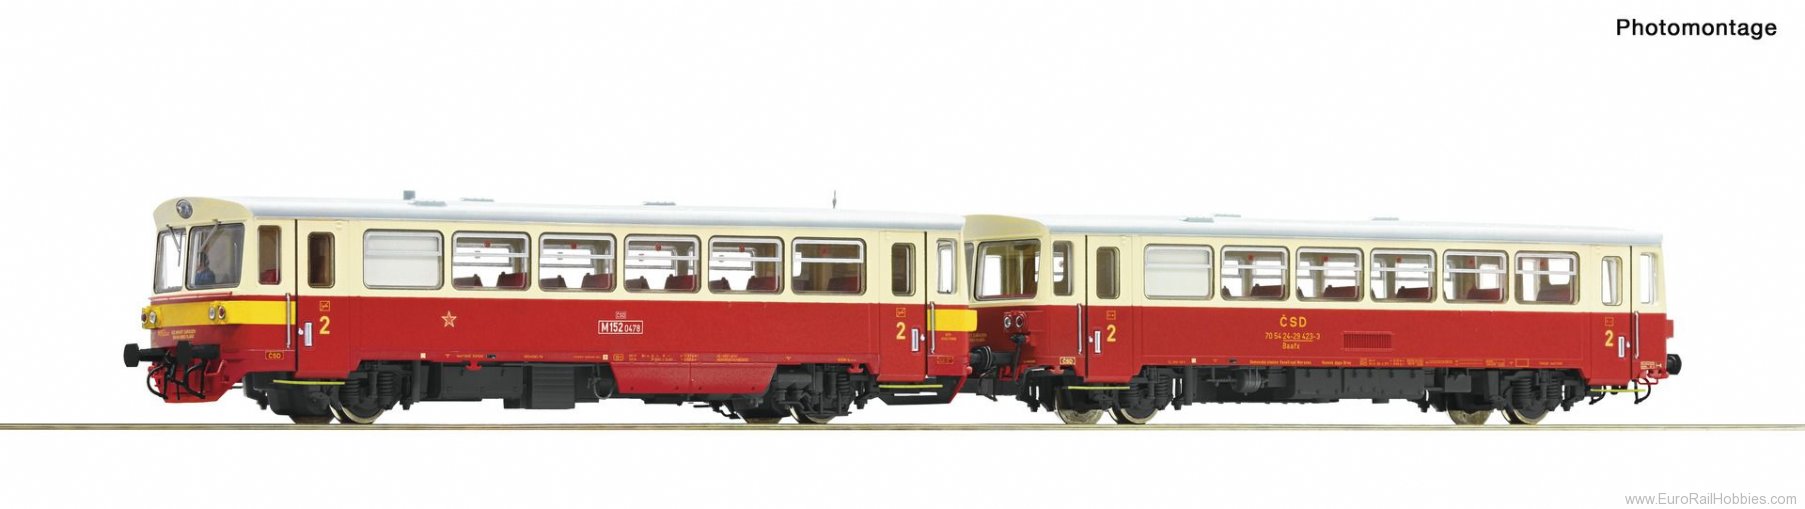 Roco 70374 CSD Diesel railcar class M 152.0 with trailer